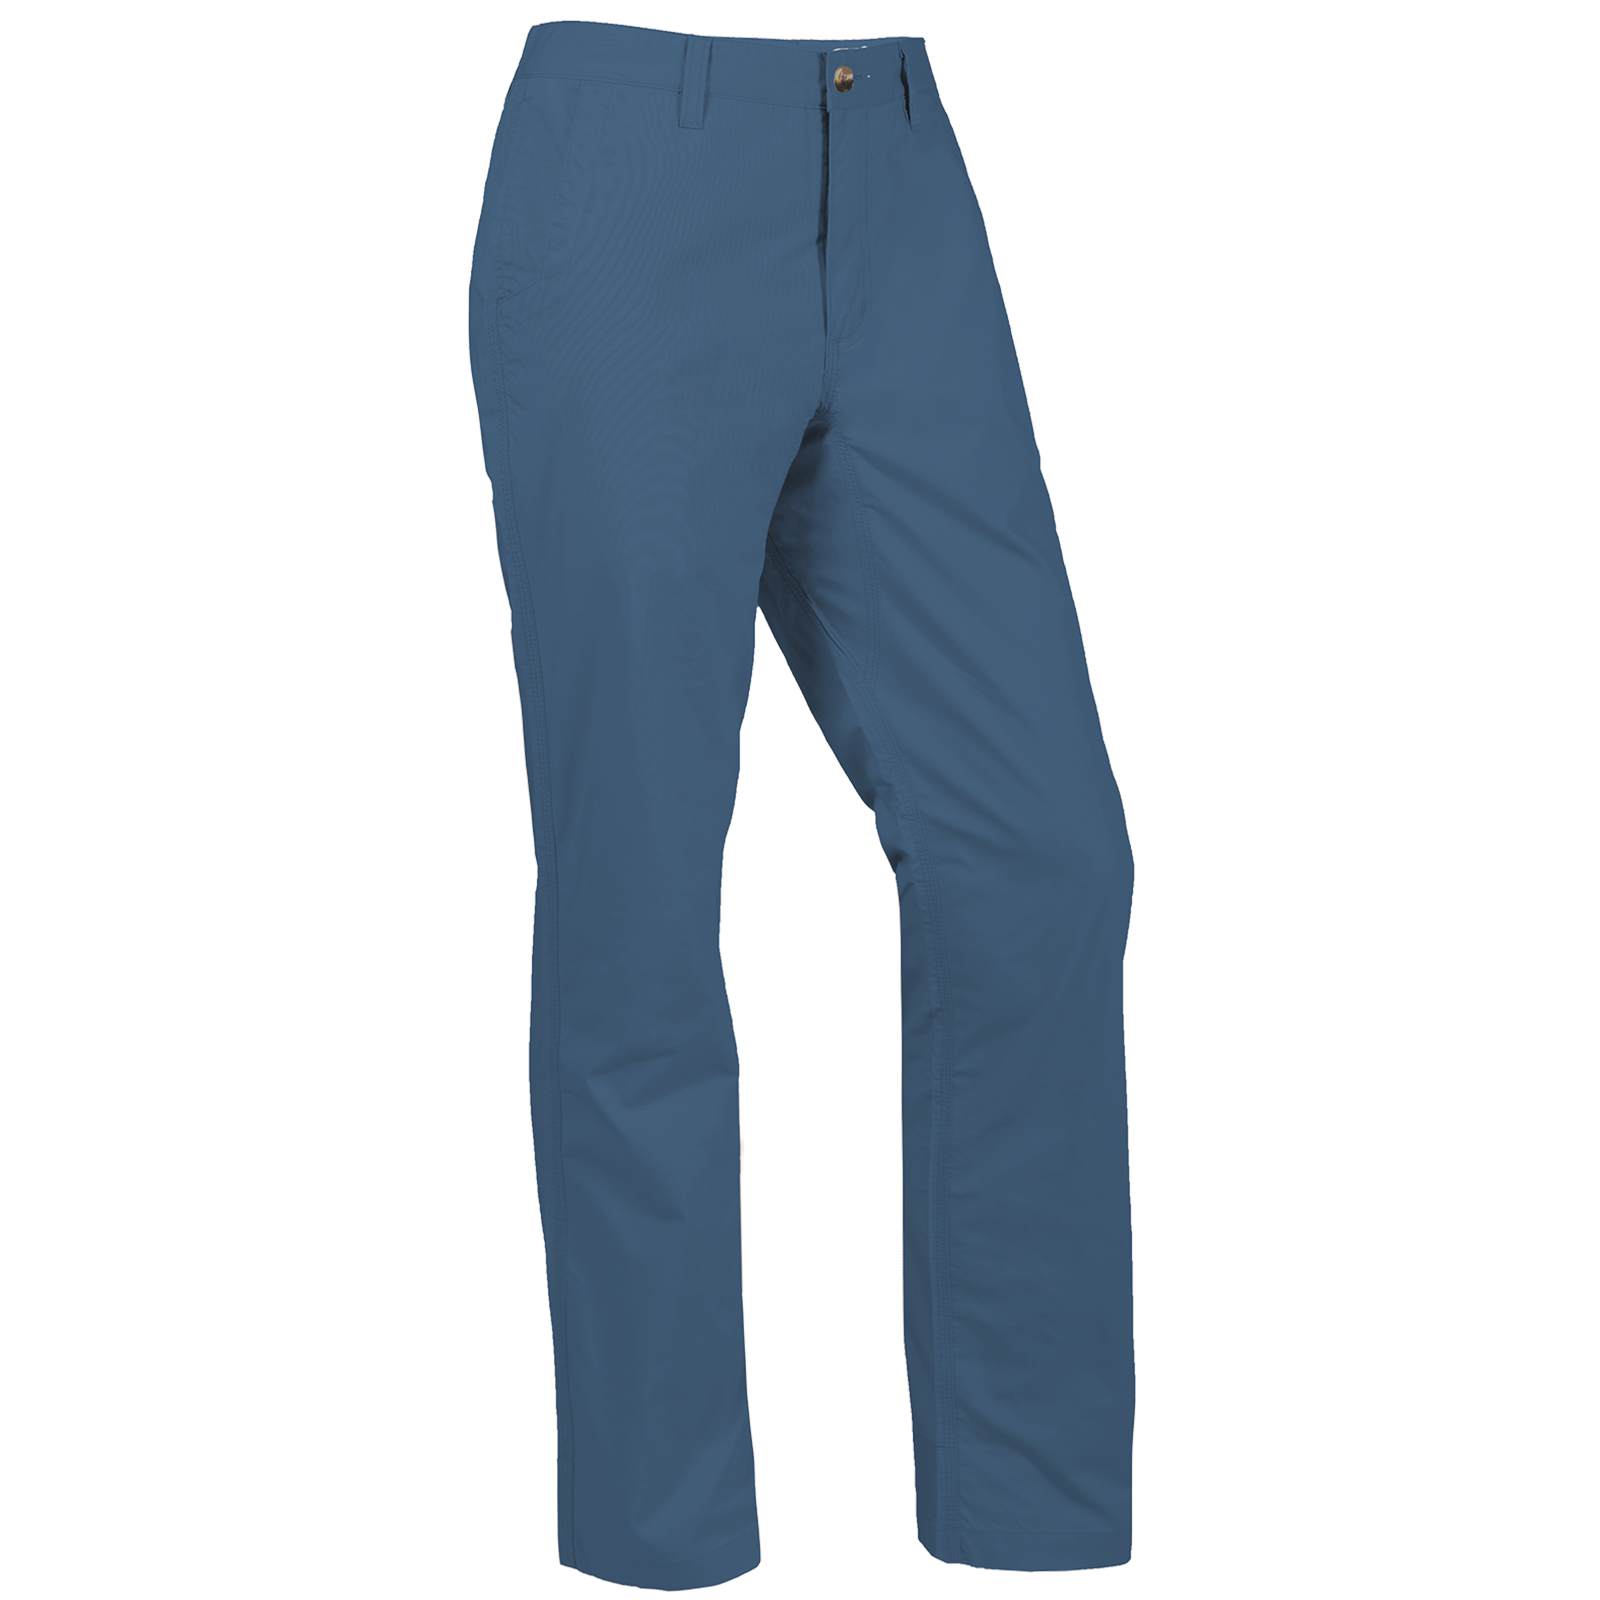 Navy-Blue Pants Matching Shirt Ideas || Navy Blue Pant Combination Shirts  || Navy Blue Pants - YouTube